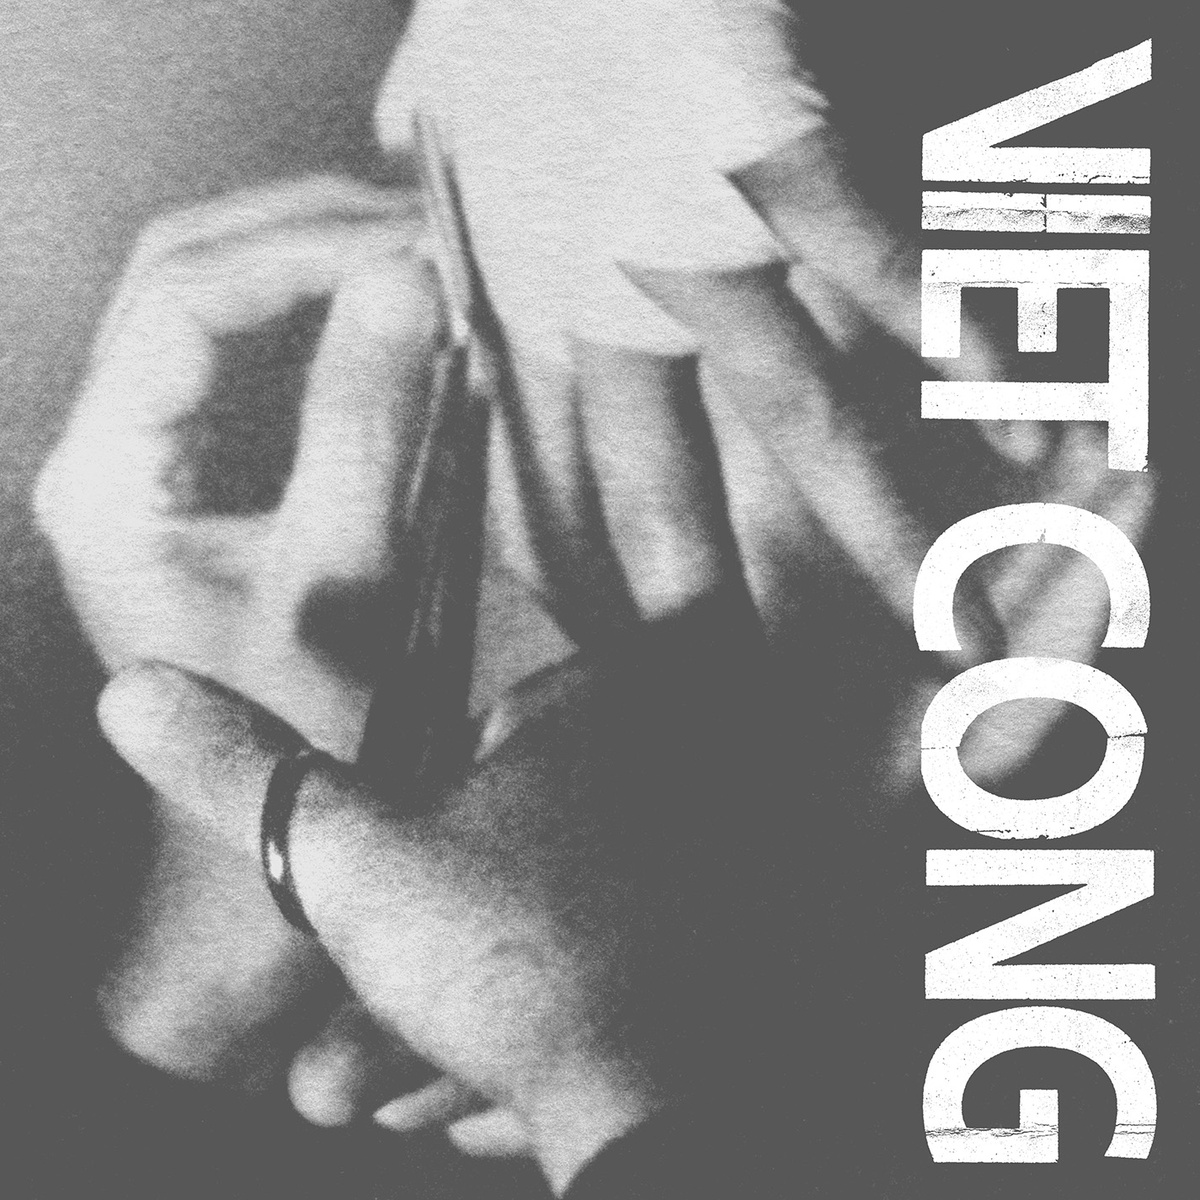 18. VIET CONG | "VIET CONG"